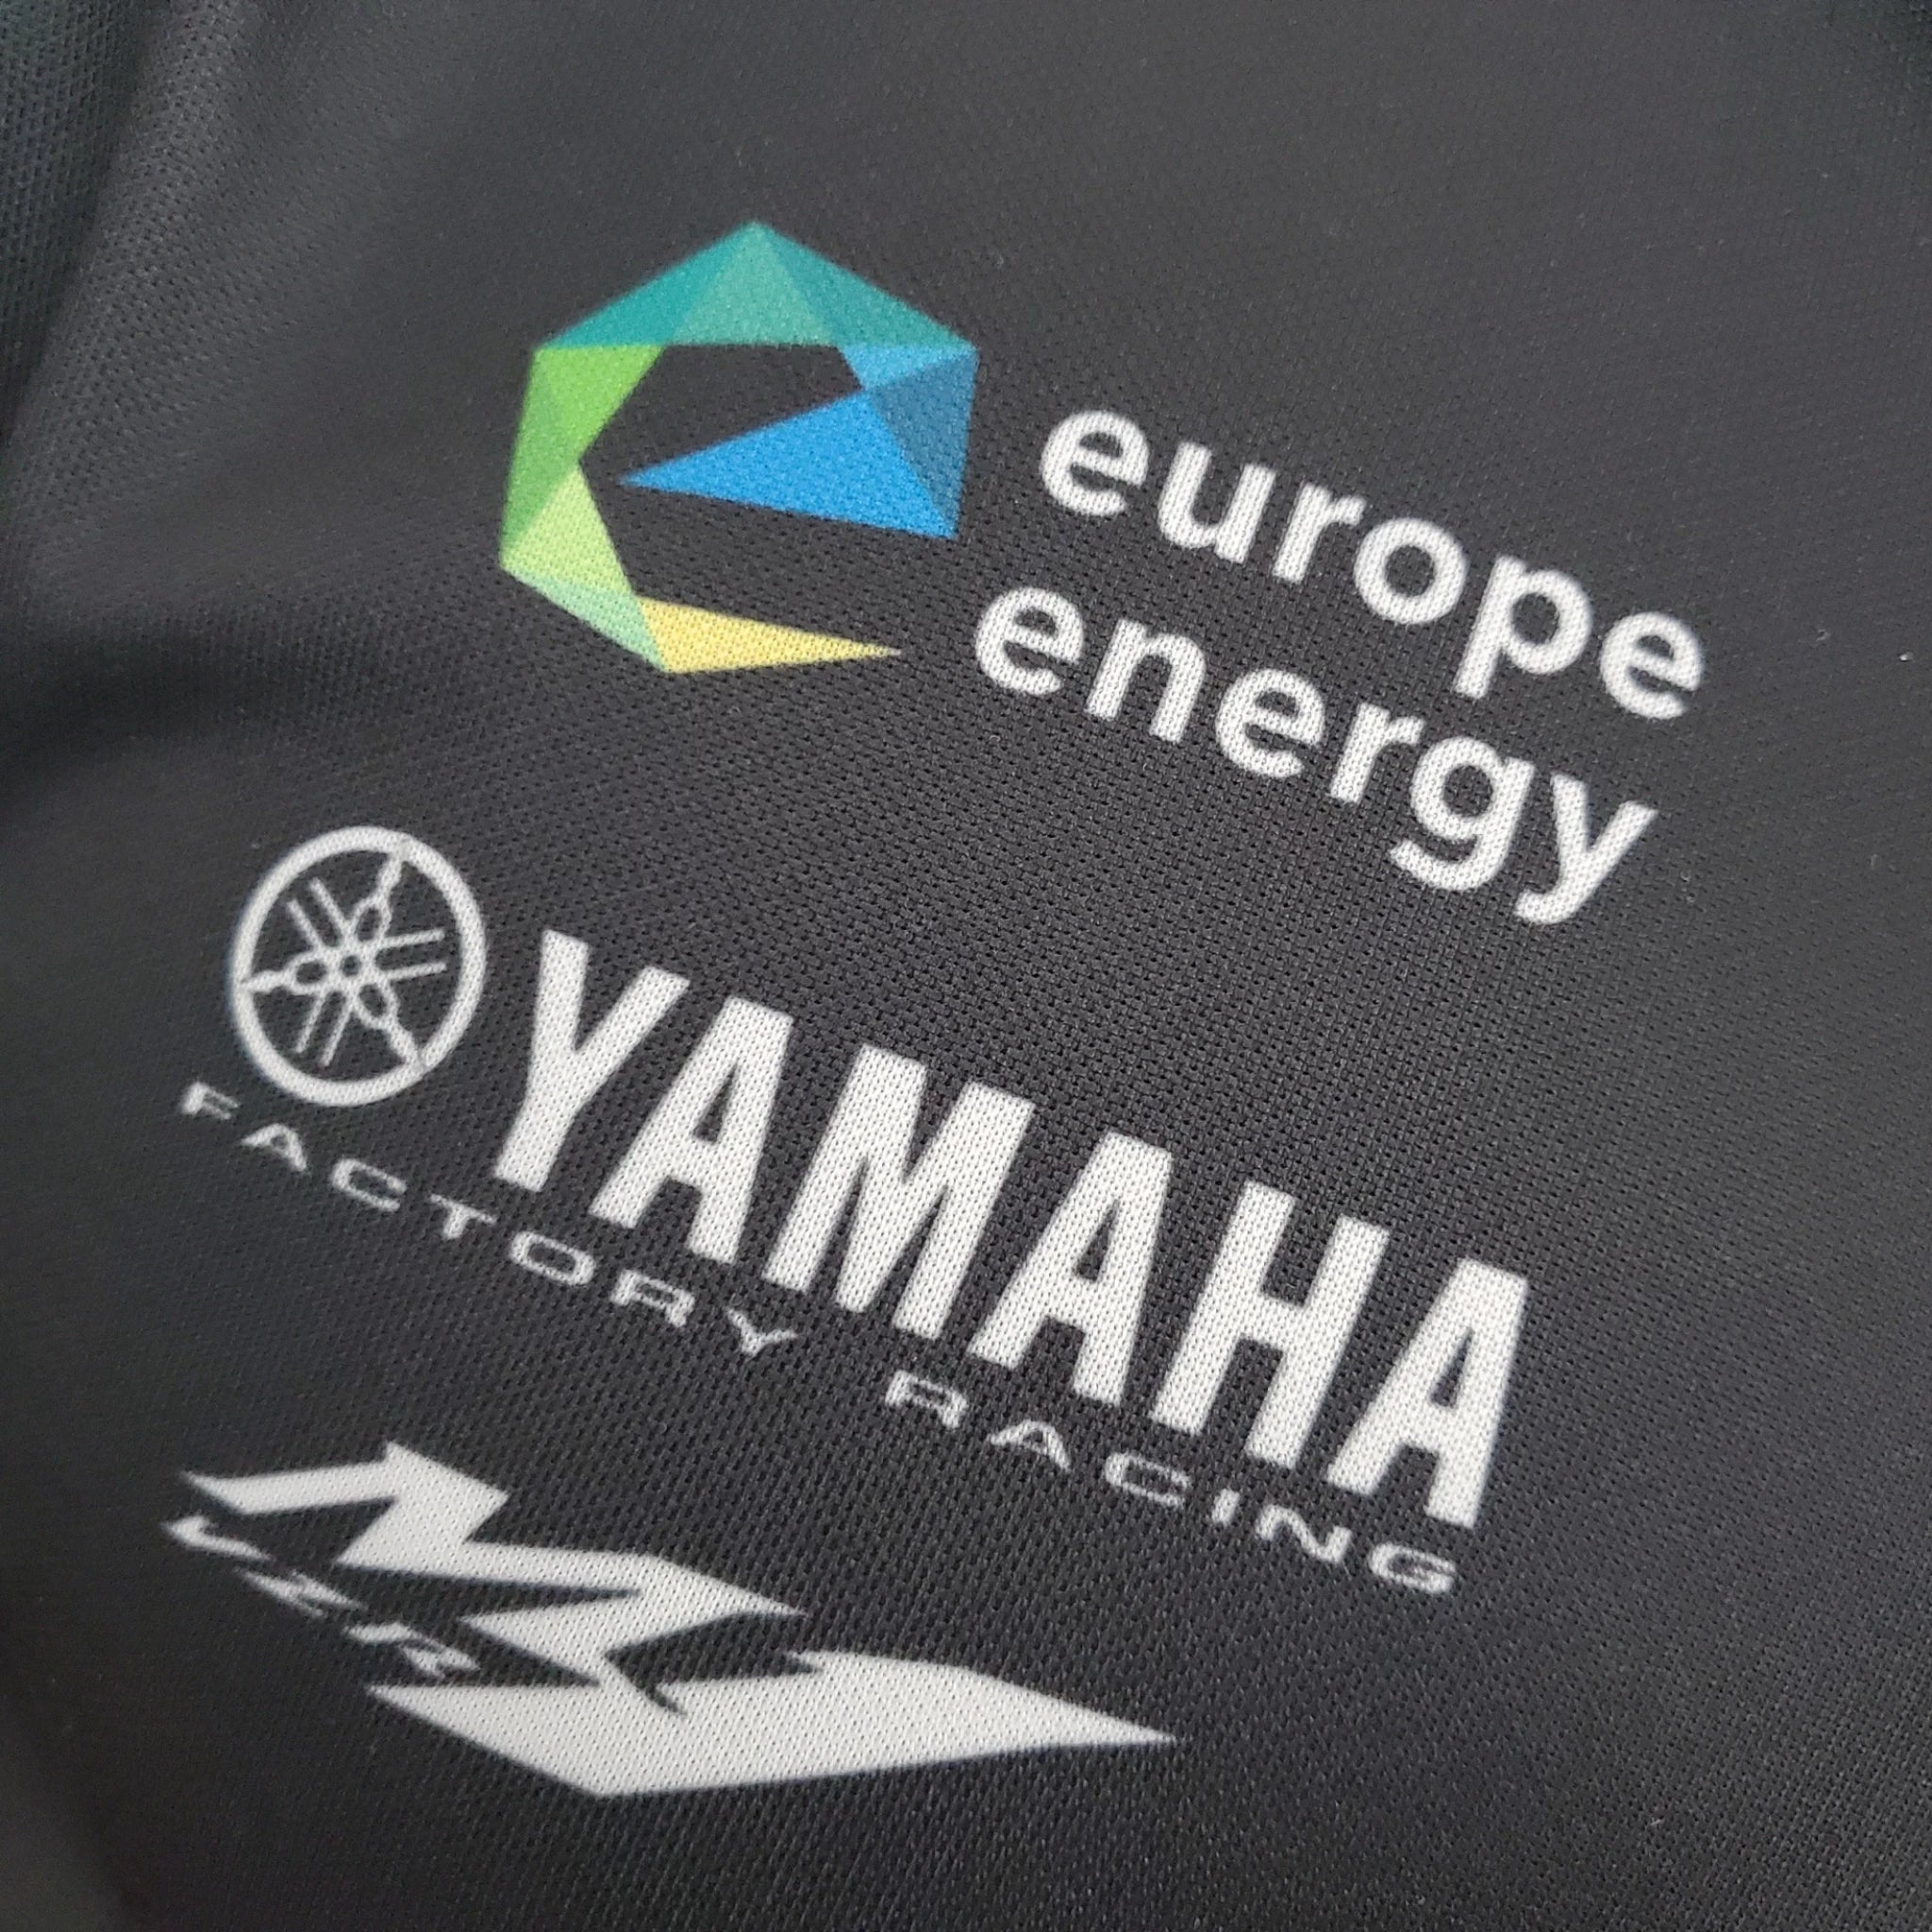 Yamaha Formula One Racing Polo Shirt